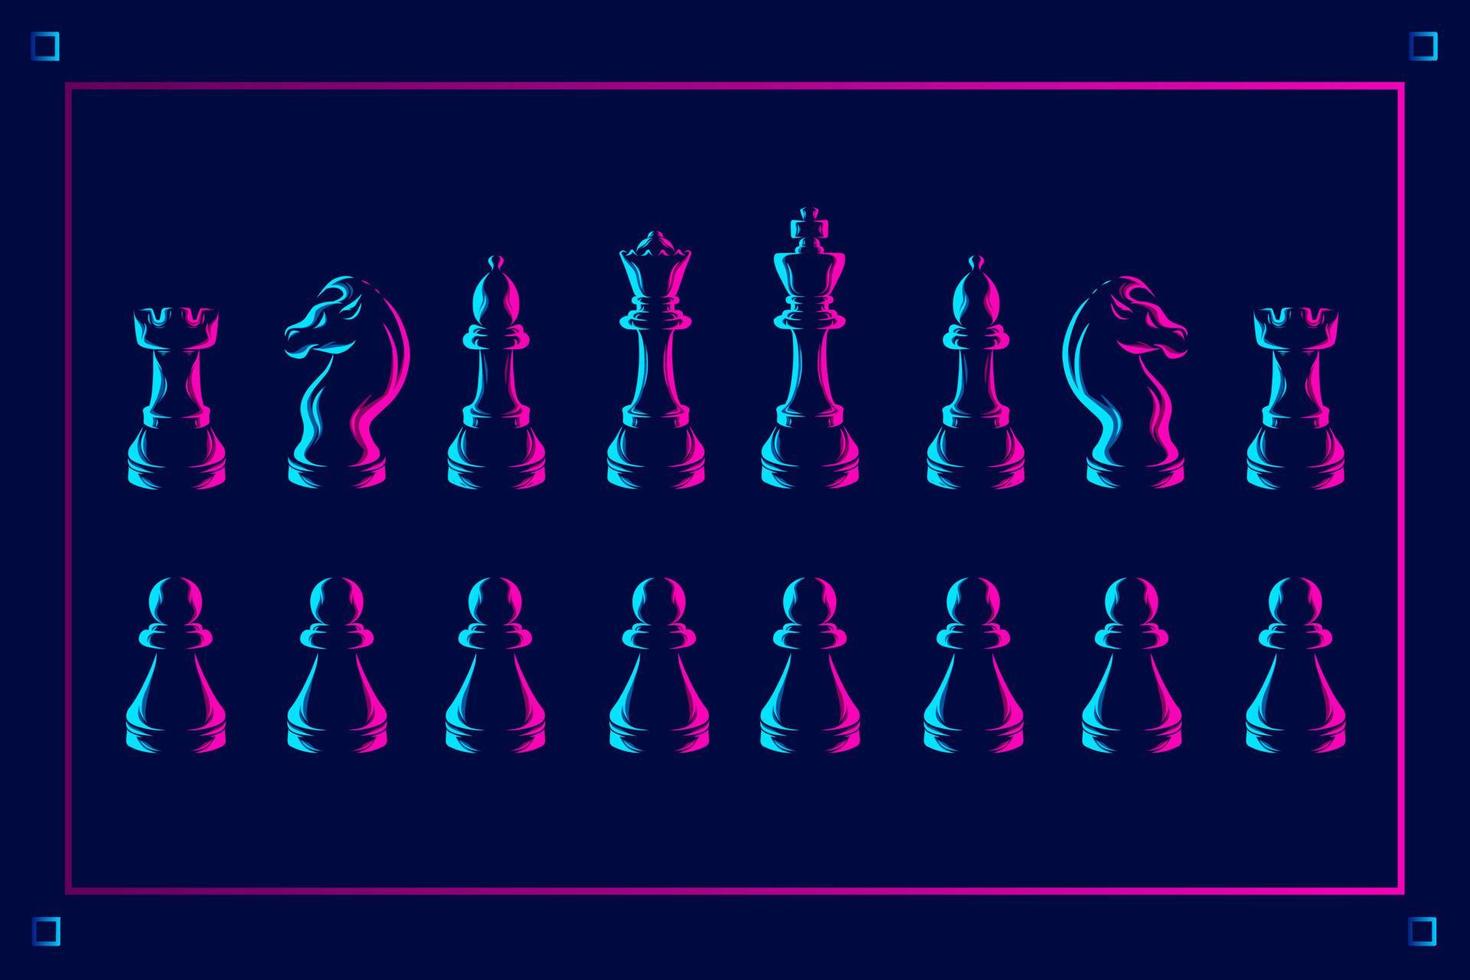 linea di scacchi pop art potrait logo design colorato con sfondo scuro. illustrazione vettoriale astratta. sfondo nero isolato per t-shirt, poster, abbigliamento, merchandising, abbigliamento, design distintivo